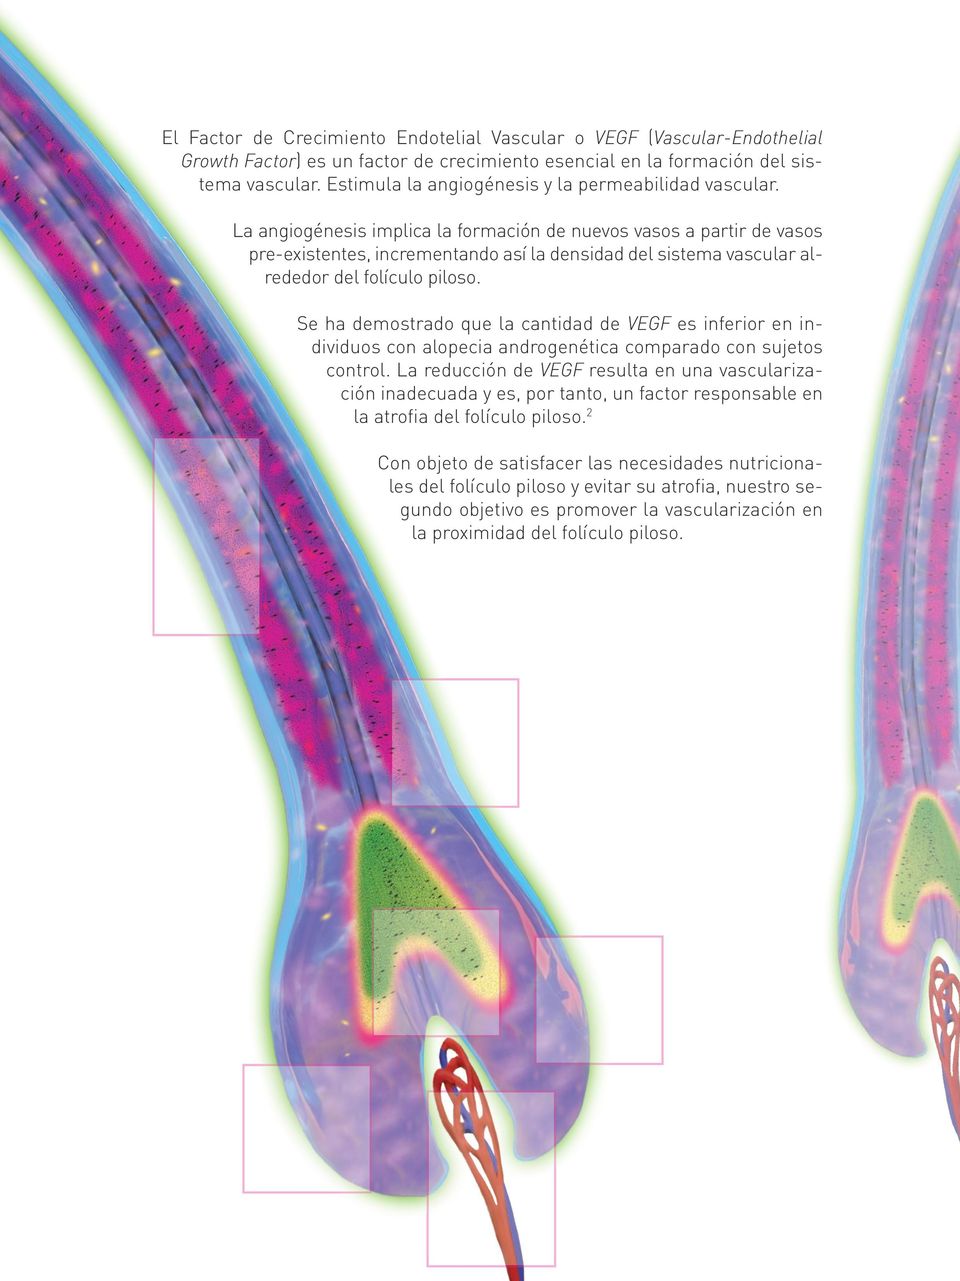 La angiogénesis implica la formación de nuevos vasos a partir de vasos pre-existentes, incrementando así la densidad del sistema vascular alrededor del folículo piloso.